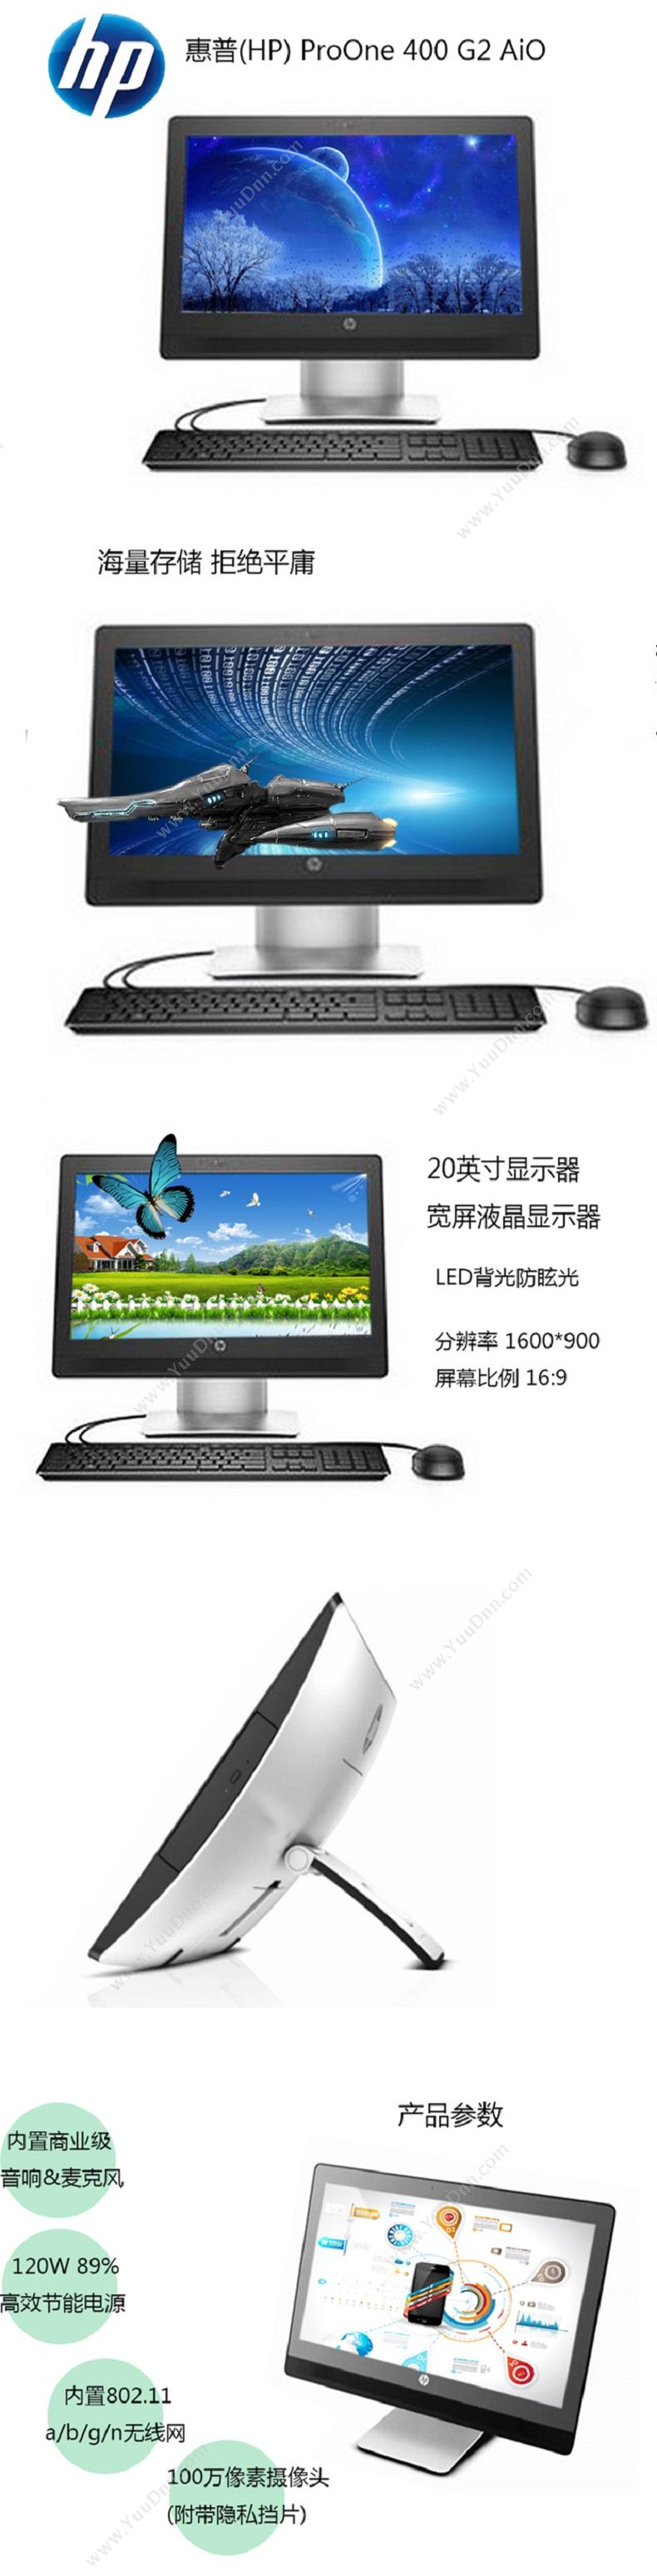 惠普 HP ProOne 400 G2 AiO 电脑一体机 I3-8100/集显/4G/1T/Win10/20英寸 台式一体机